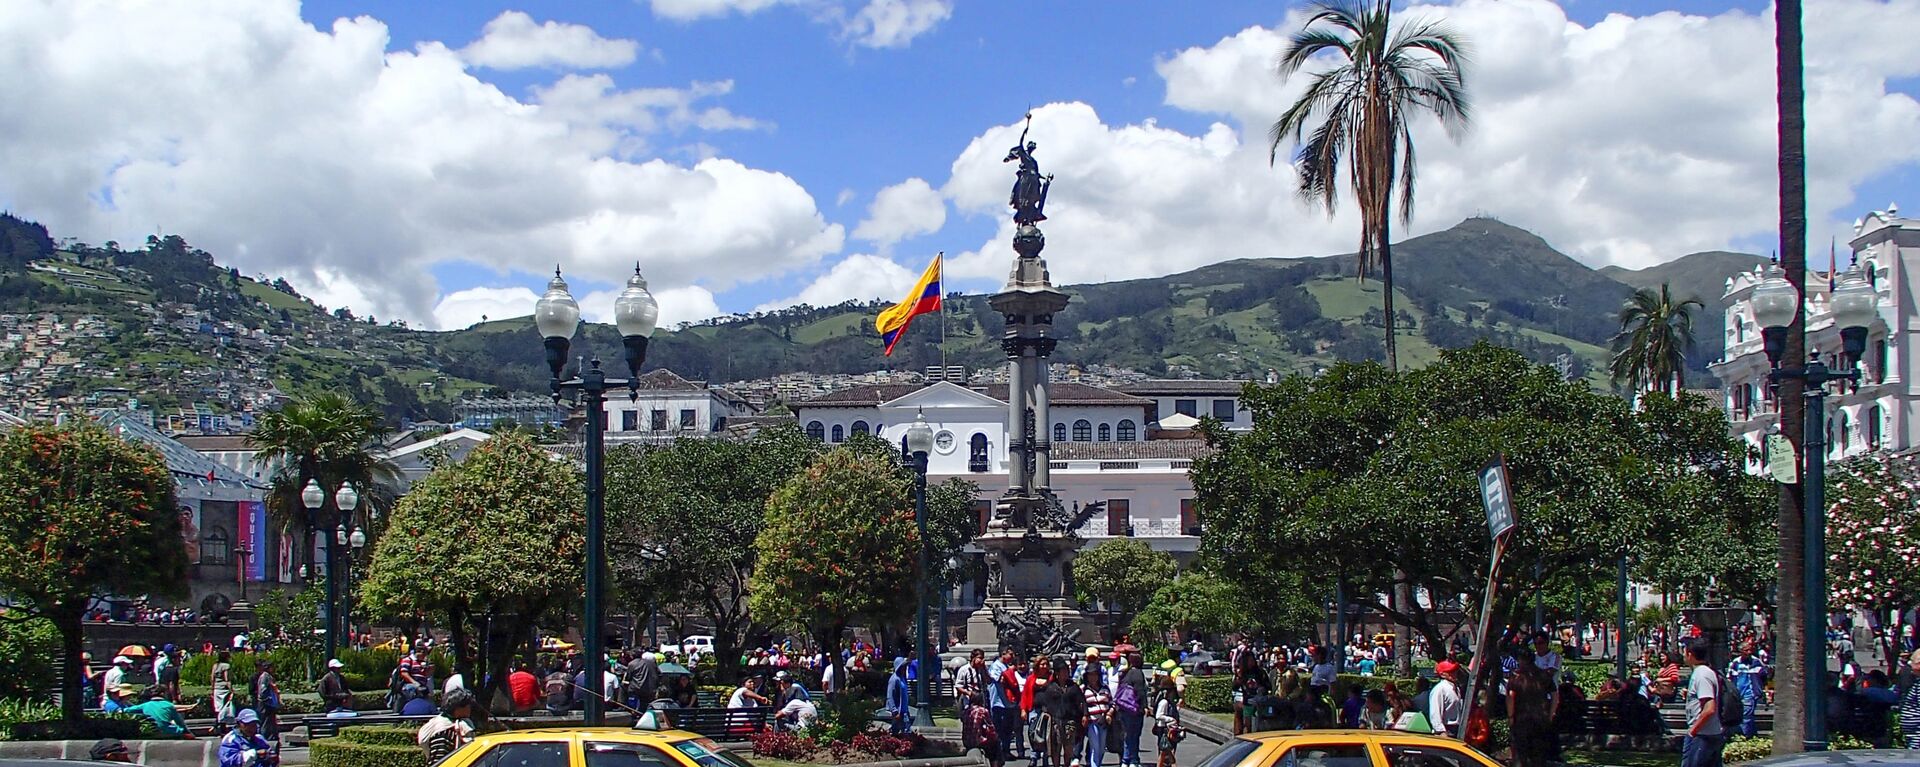 Quito, la capital de Ecuador - Sputnik Mundo, 1920, 15.04.2021